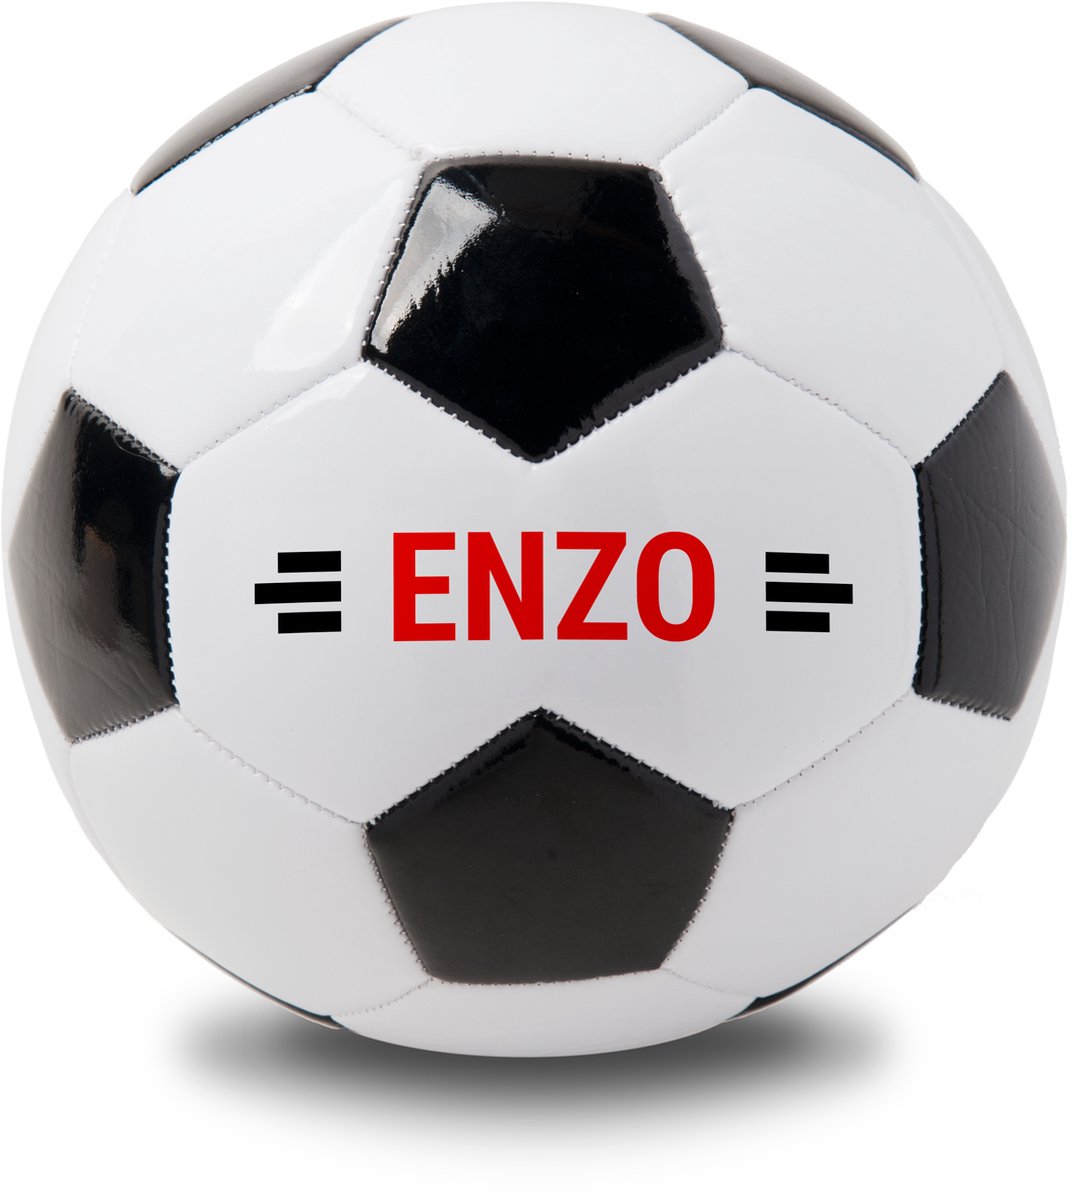 Gepersonaliseerde Voetbal met naam - Persoonlijke voetbal - Witte bal met zwarte vlekken - Perfect cadeau voetbalfan - Voetbal bedrukken